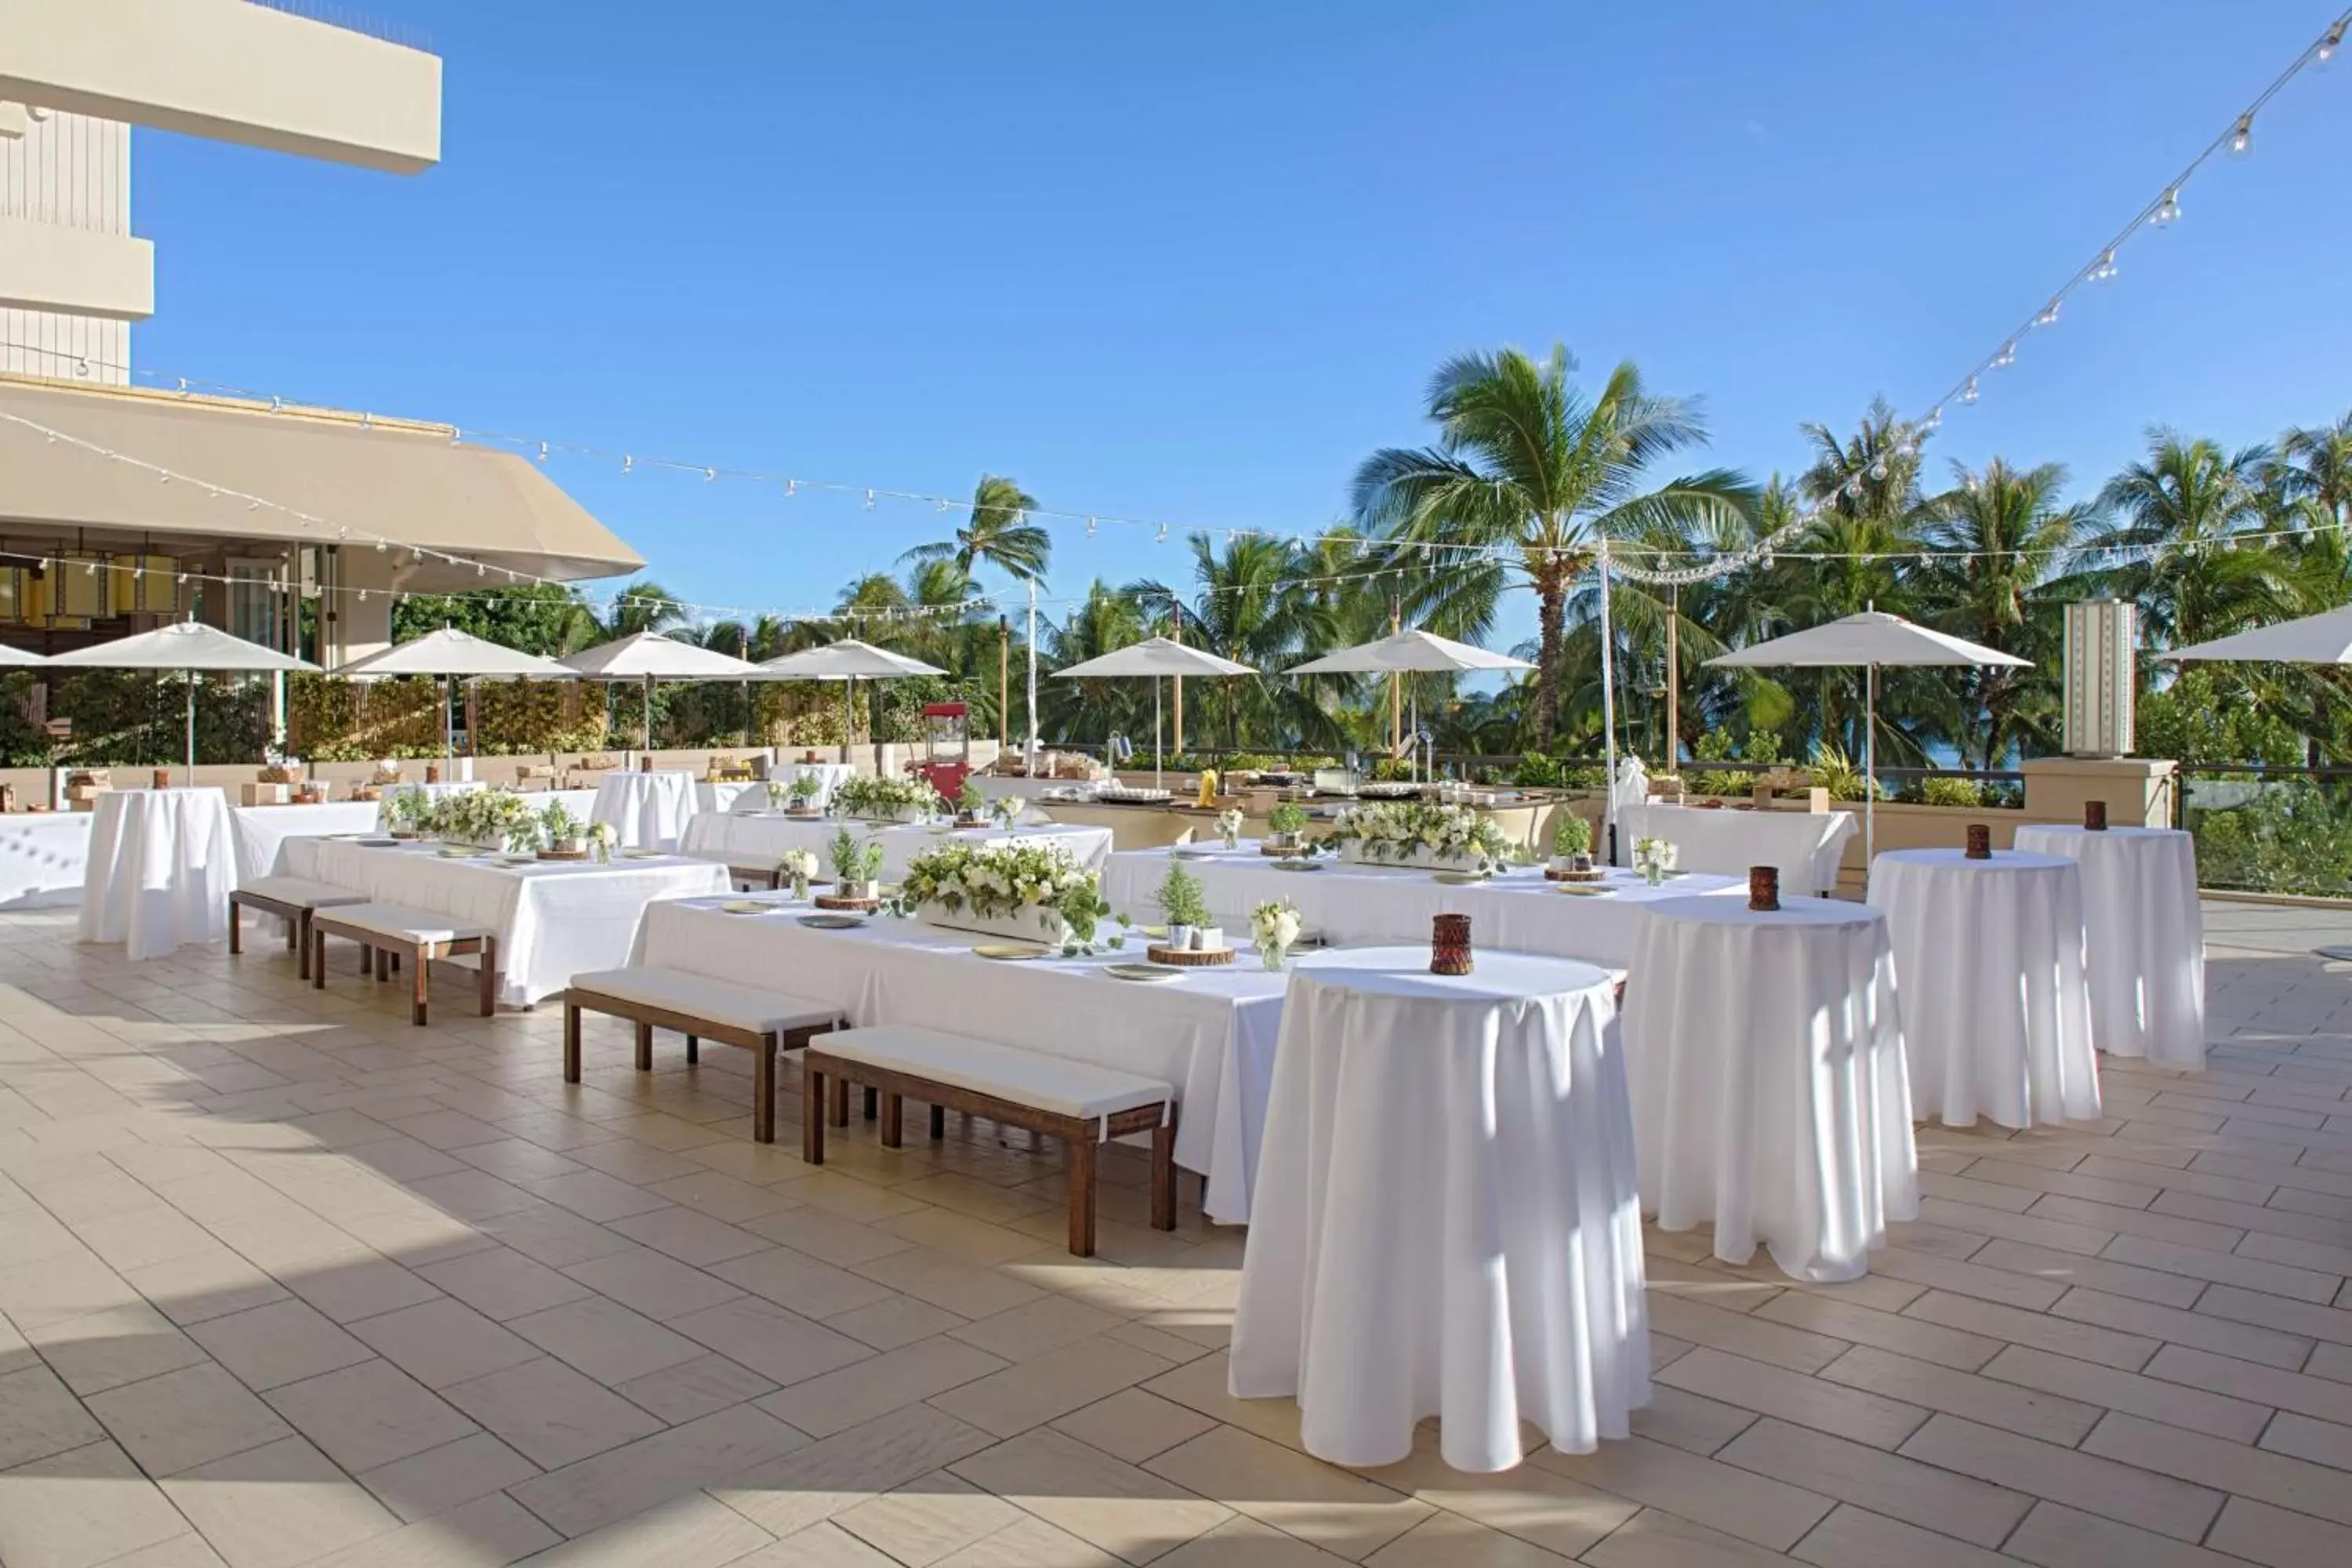 Meeting/conference room, Restaurant/Places to Eat in Hyatt Regency Waikiki Beach Resort & Spa